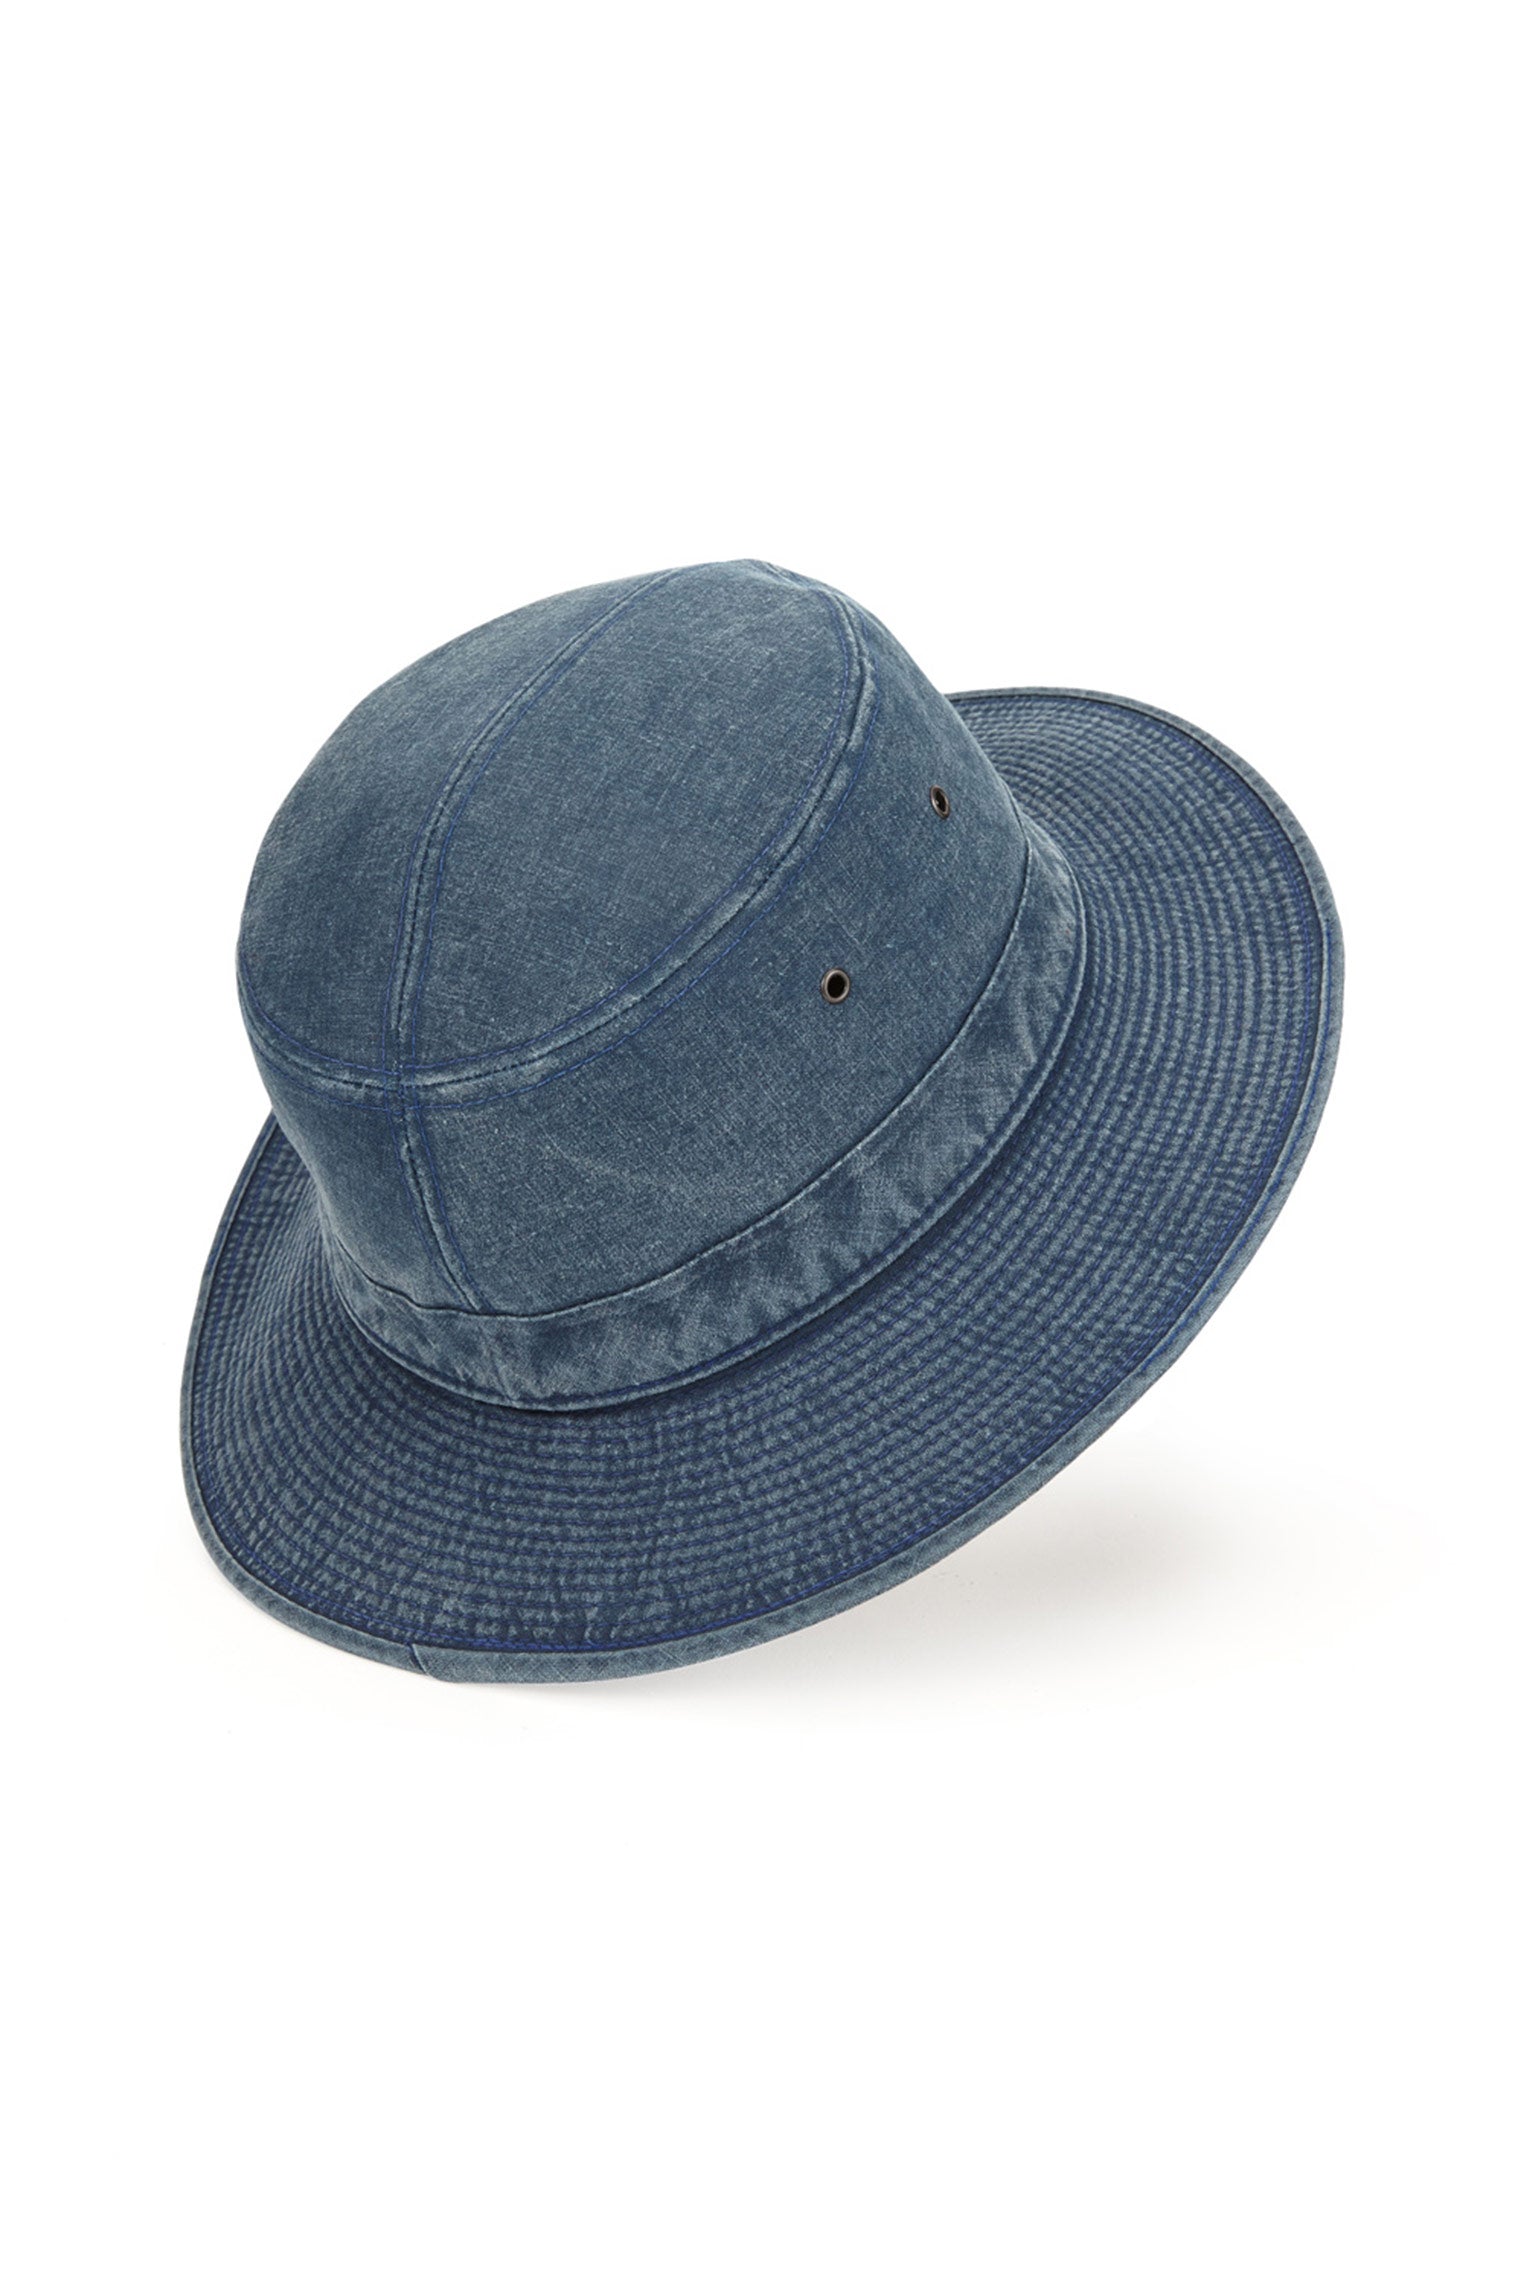 Capri Rollable Hat - Men's Hats - Lock & Co. Hatters London UK